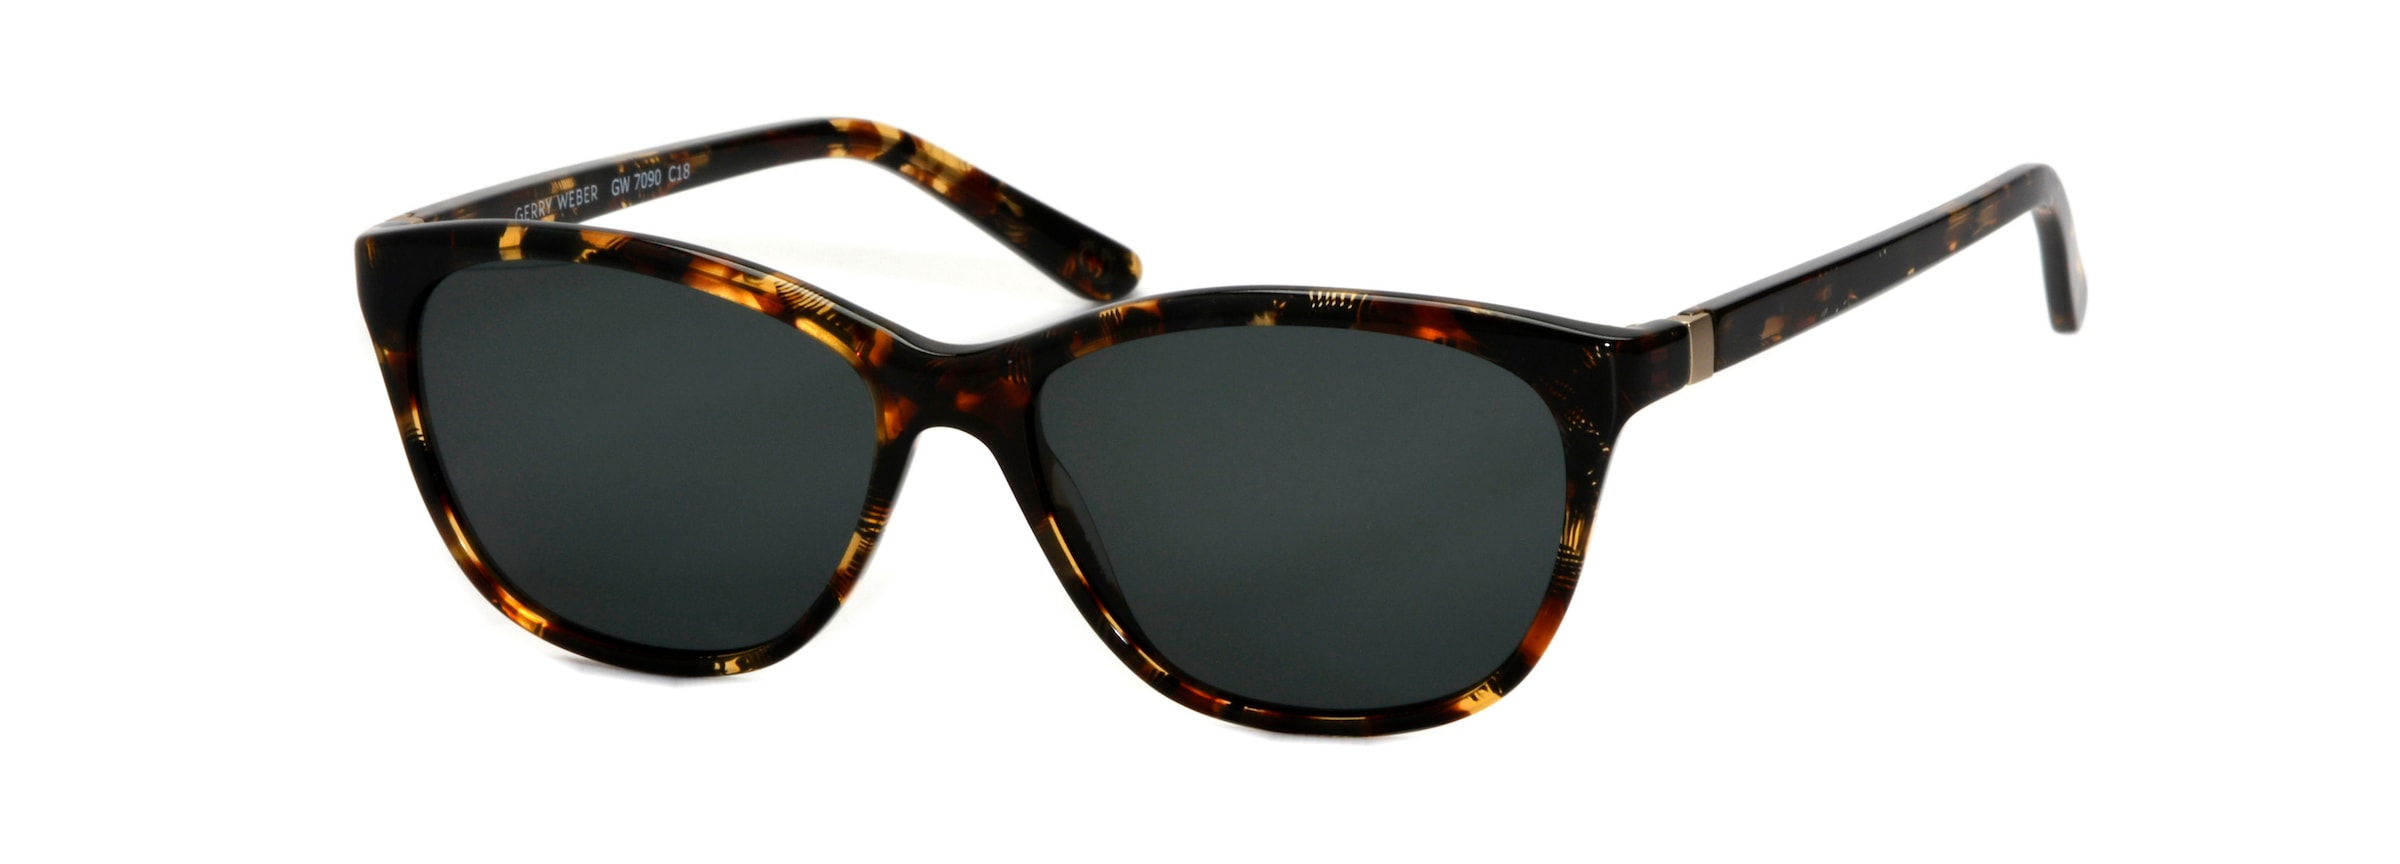 GERRY WEBER Sonnenbrille, Klassische Damenbrille, Vollrand